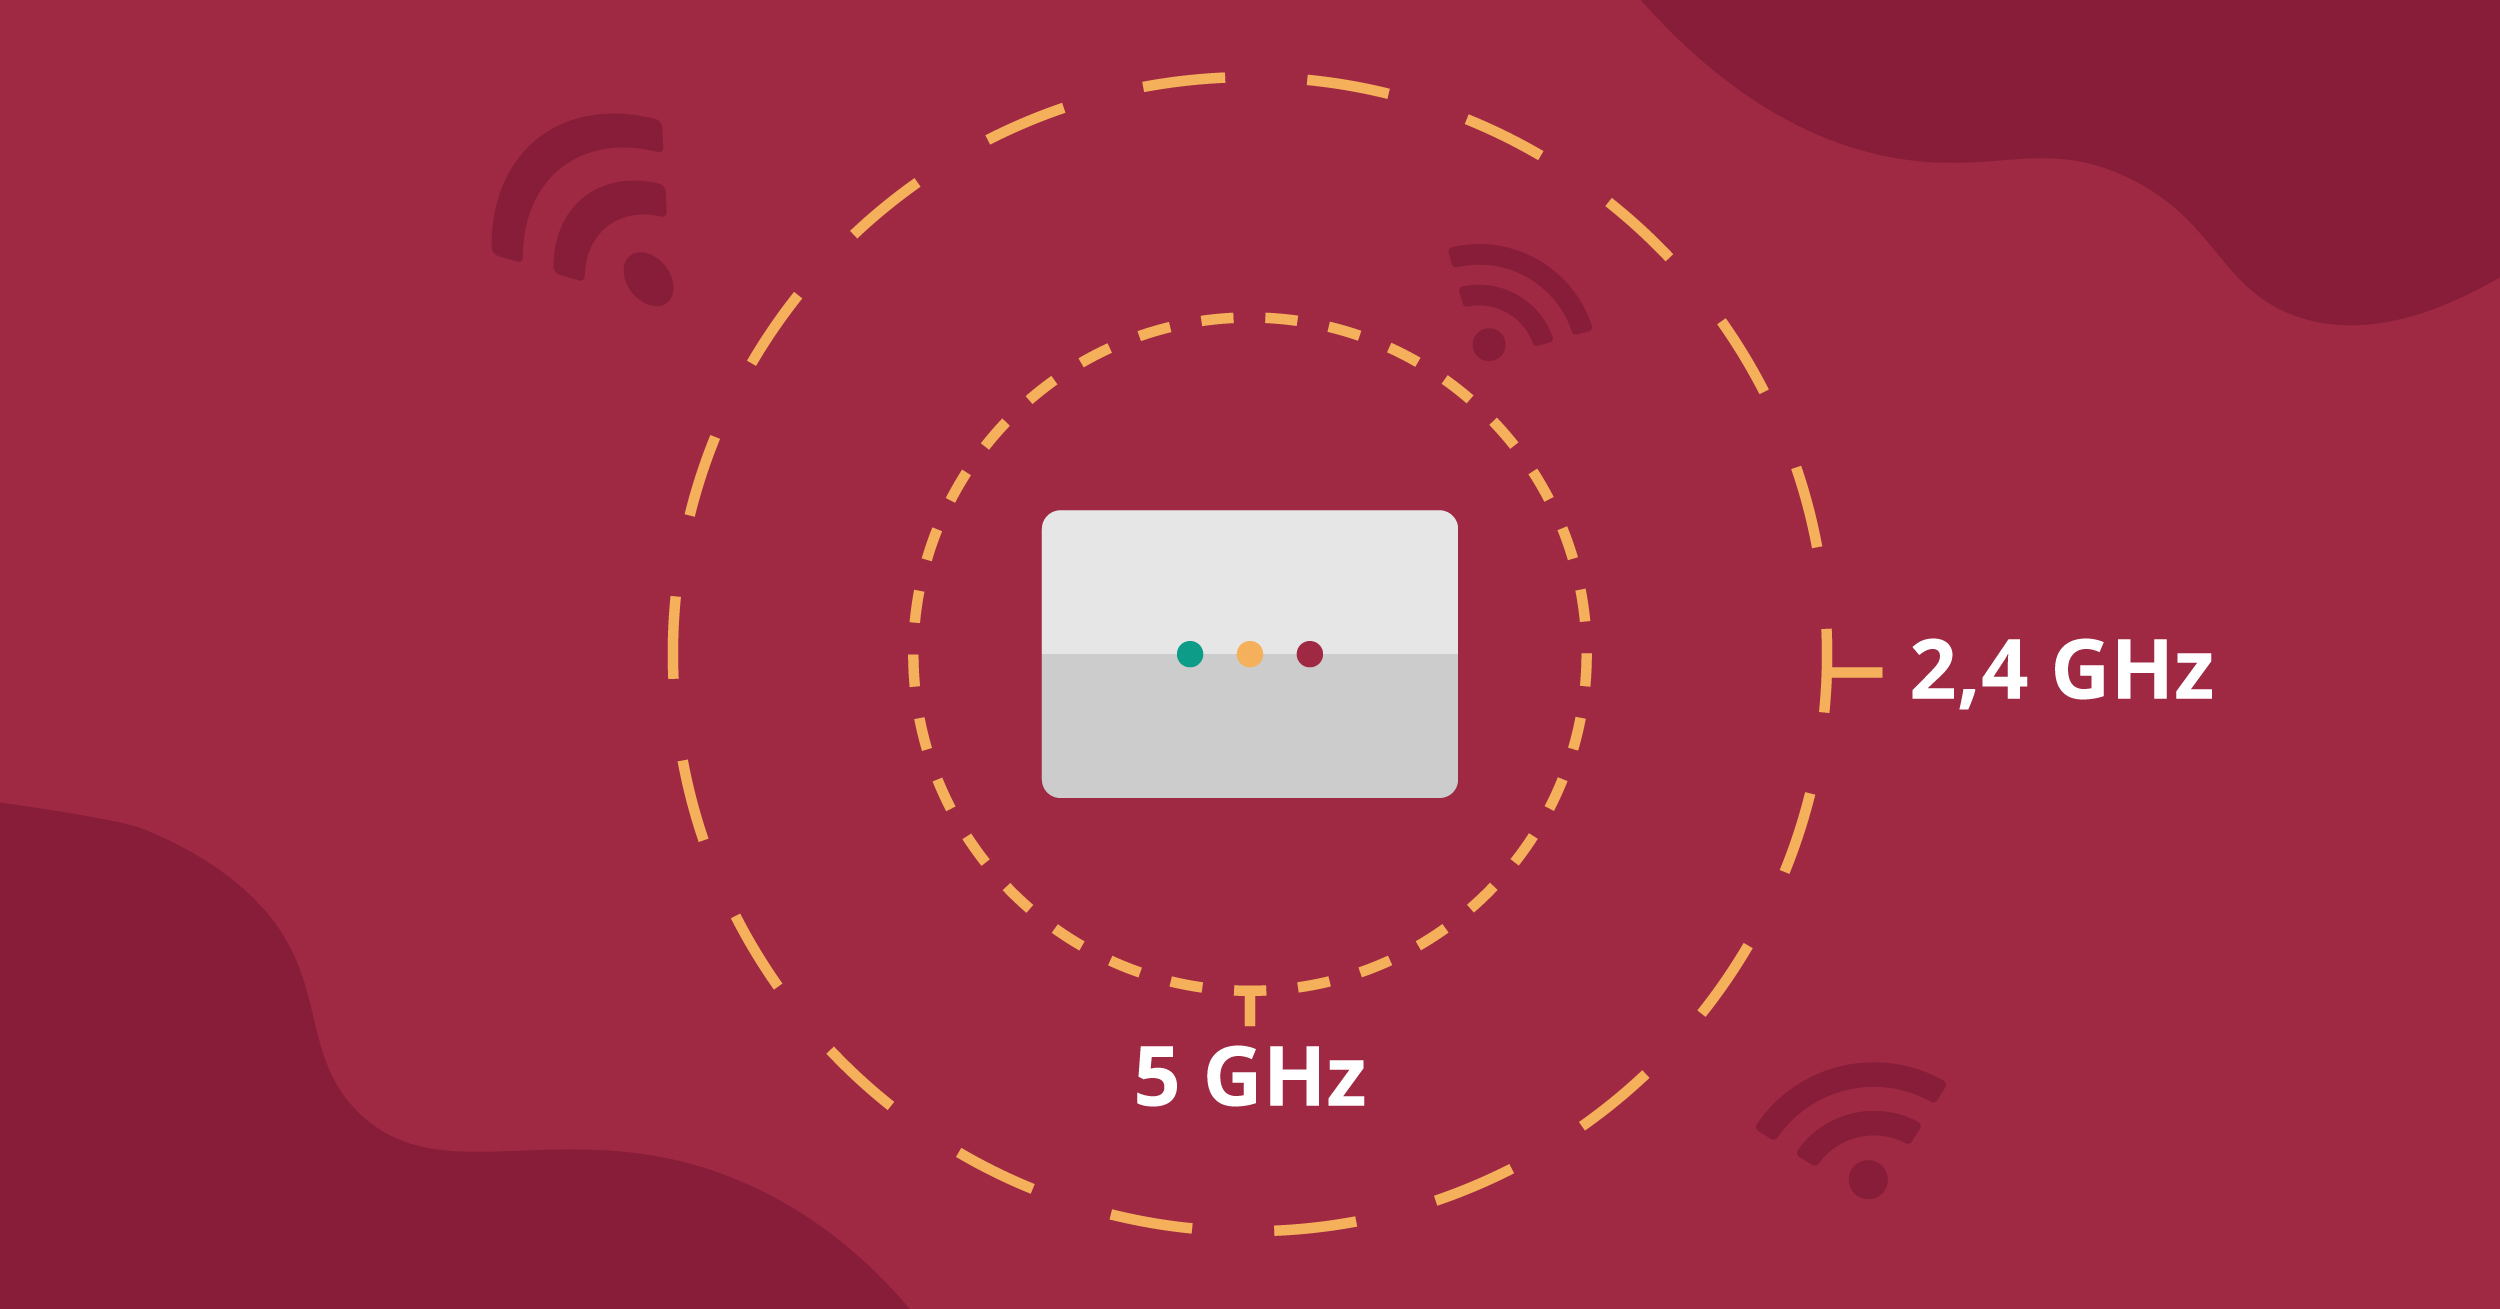 På bilden syns en illustration över en router och dess olika frekvensband. I en gul cirkel närmst routern står det 5 GHz, i en gul cirkel längre ut från routern står det 2,4 GHz.